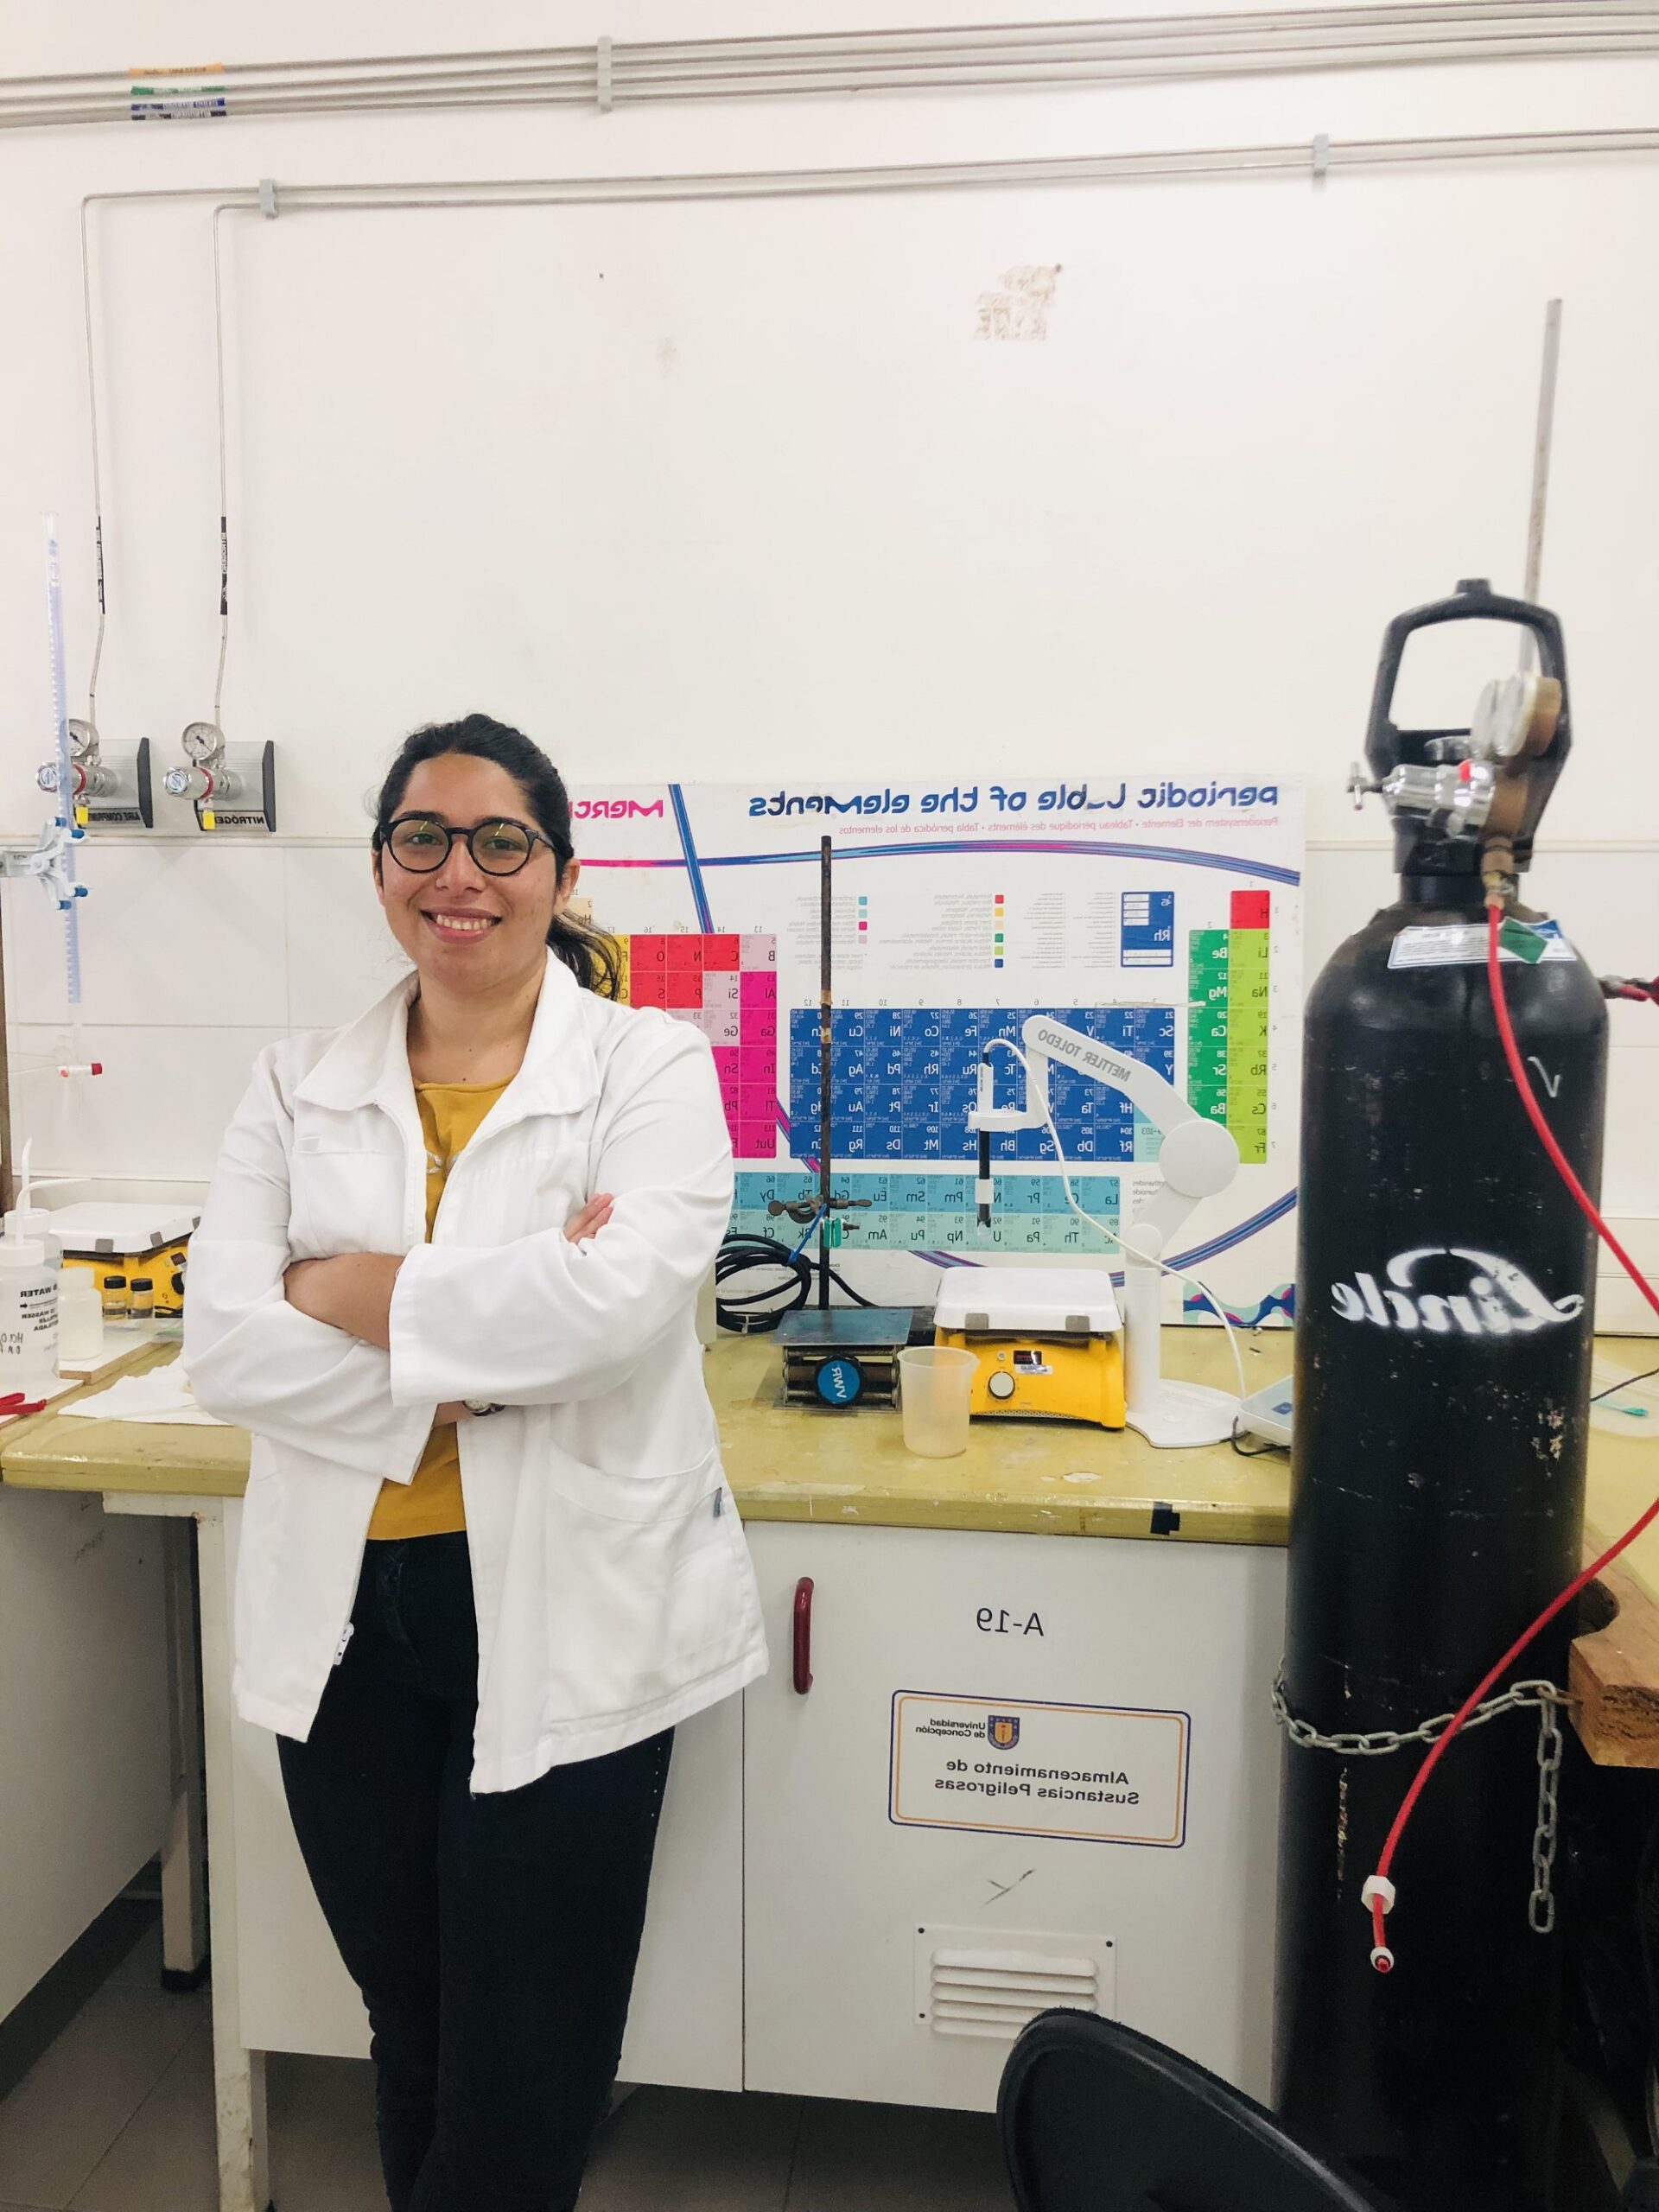 Estudiante de Magíster en Química es reconocida por empresa internacional entre las 25 mujeres científicas destacadas de Latinoamérica